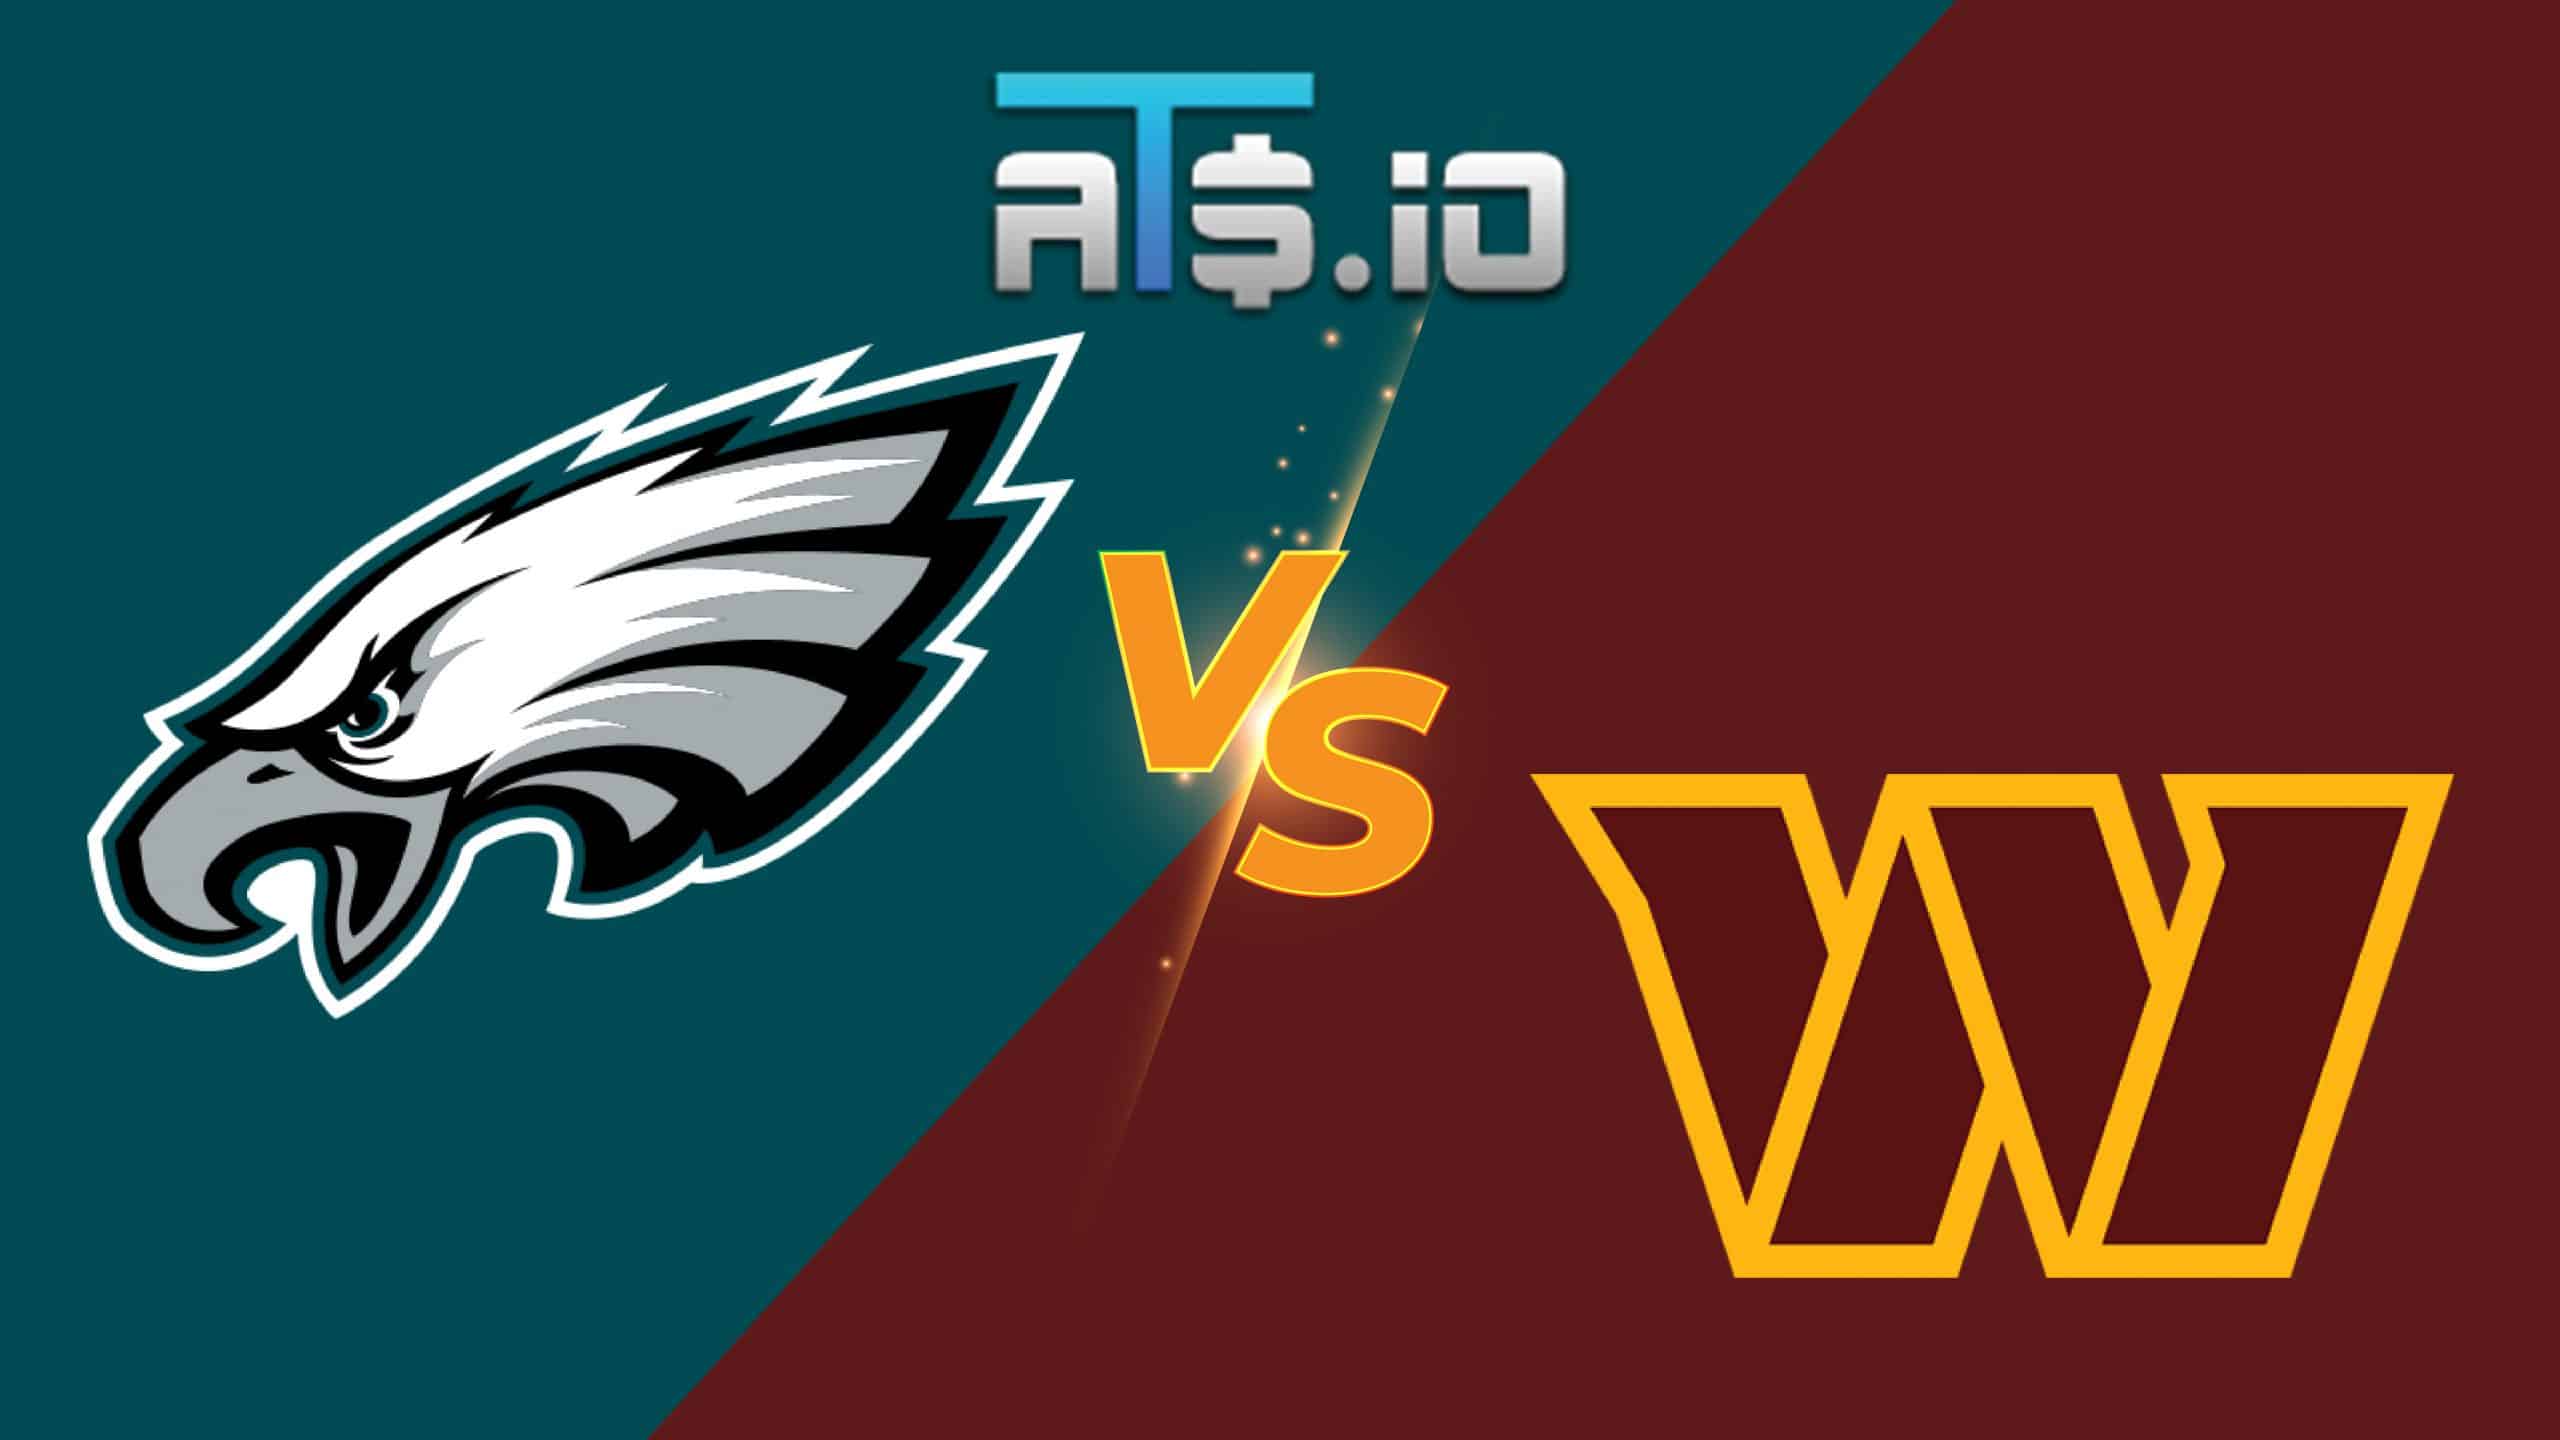 Philadelphia Eagles vs Washington Commanders Week 3 Pick 9/25/22